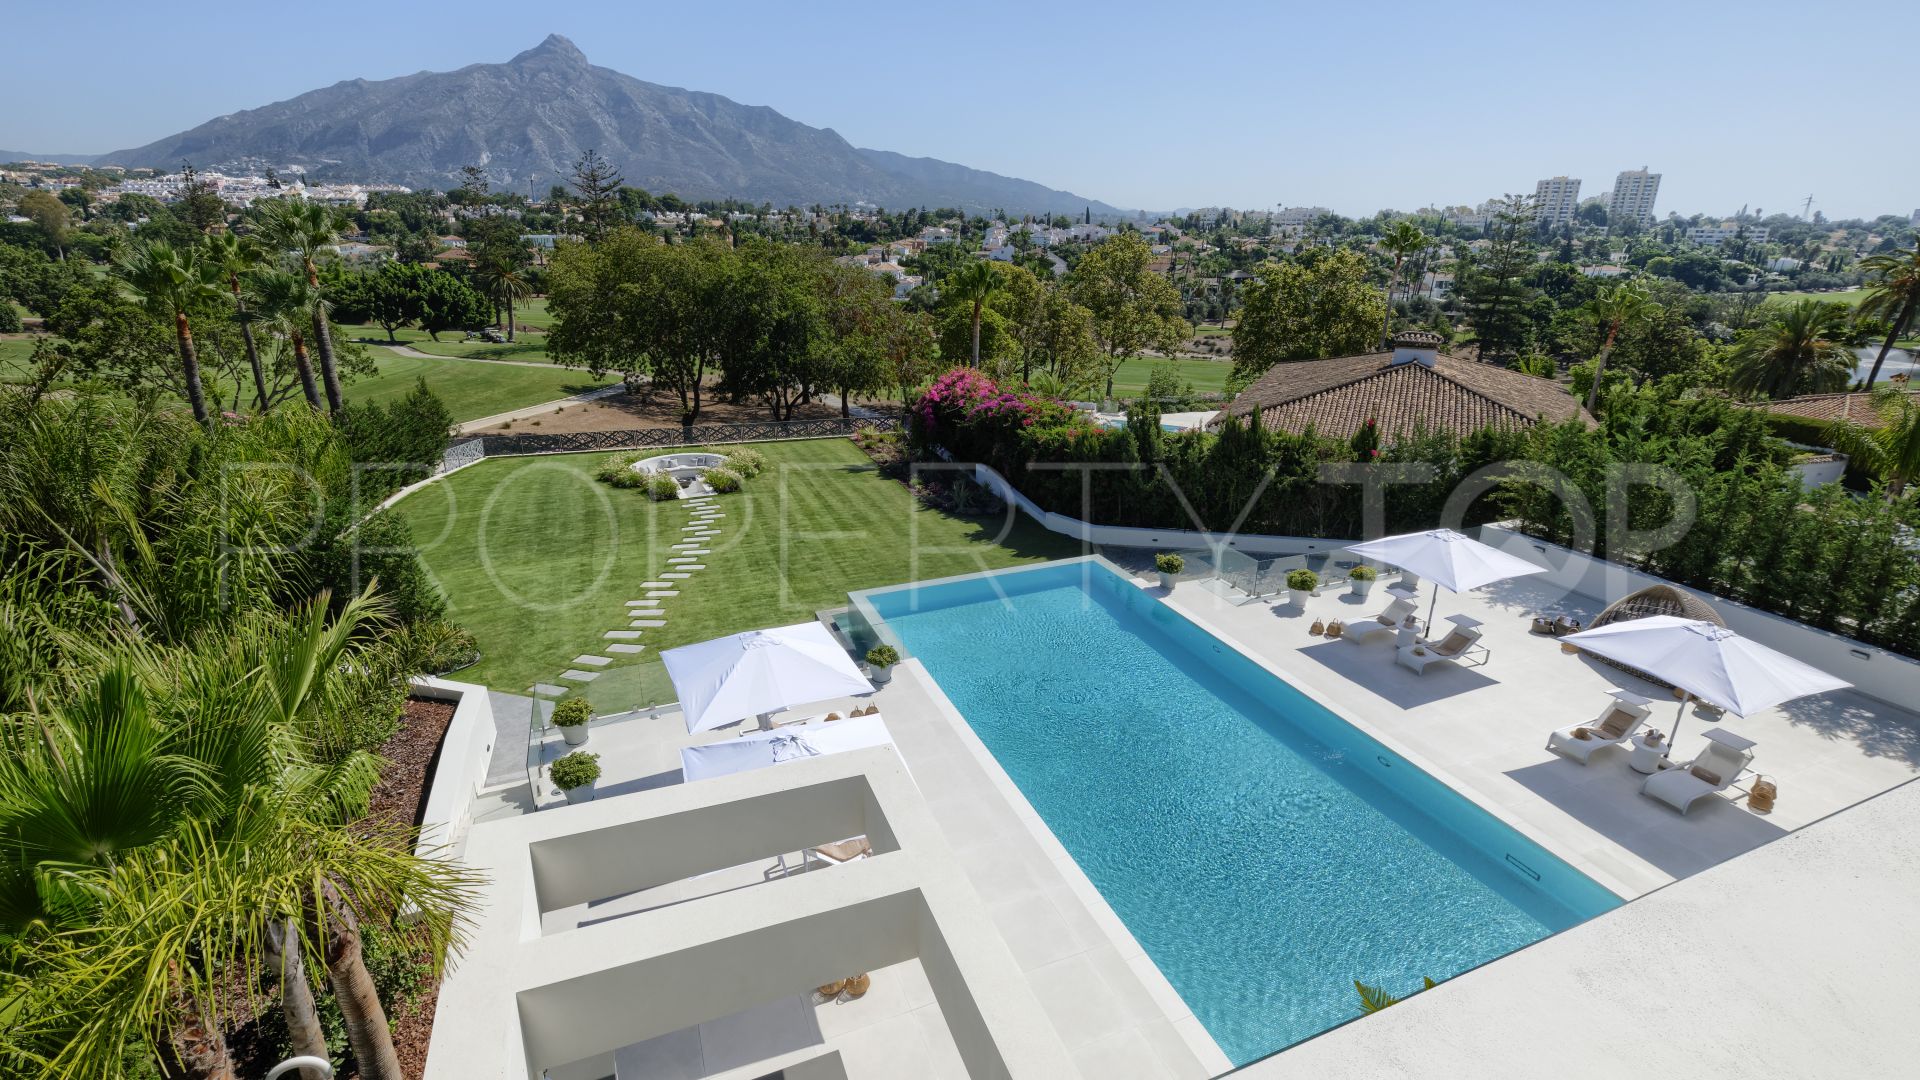 9 bedrooms villa in Country Club Las Brisas for sale